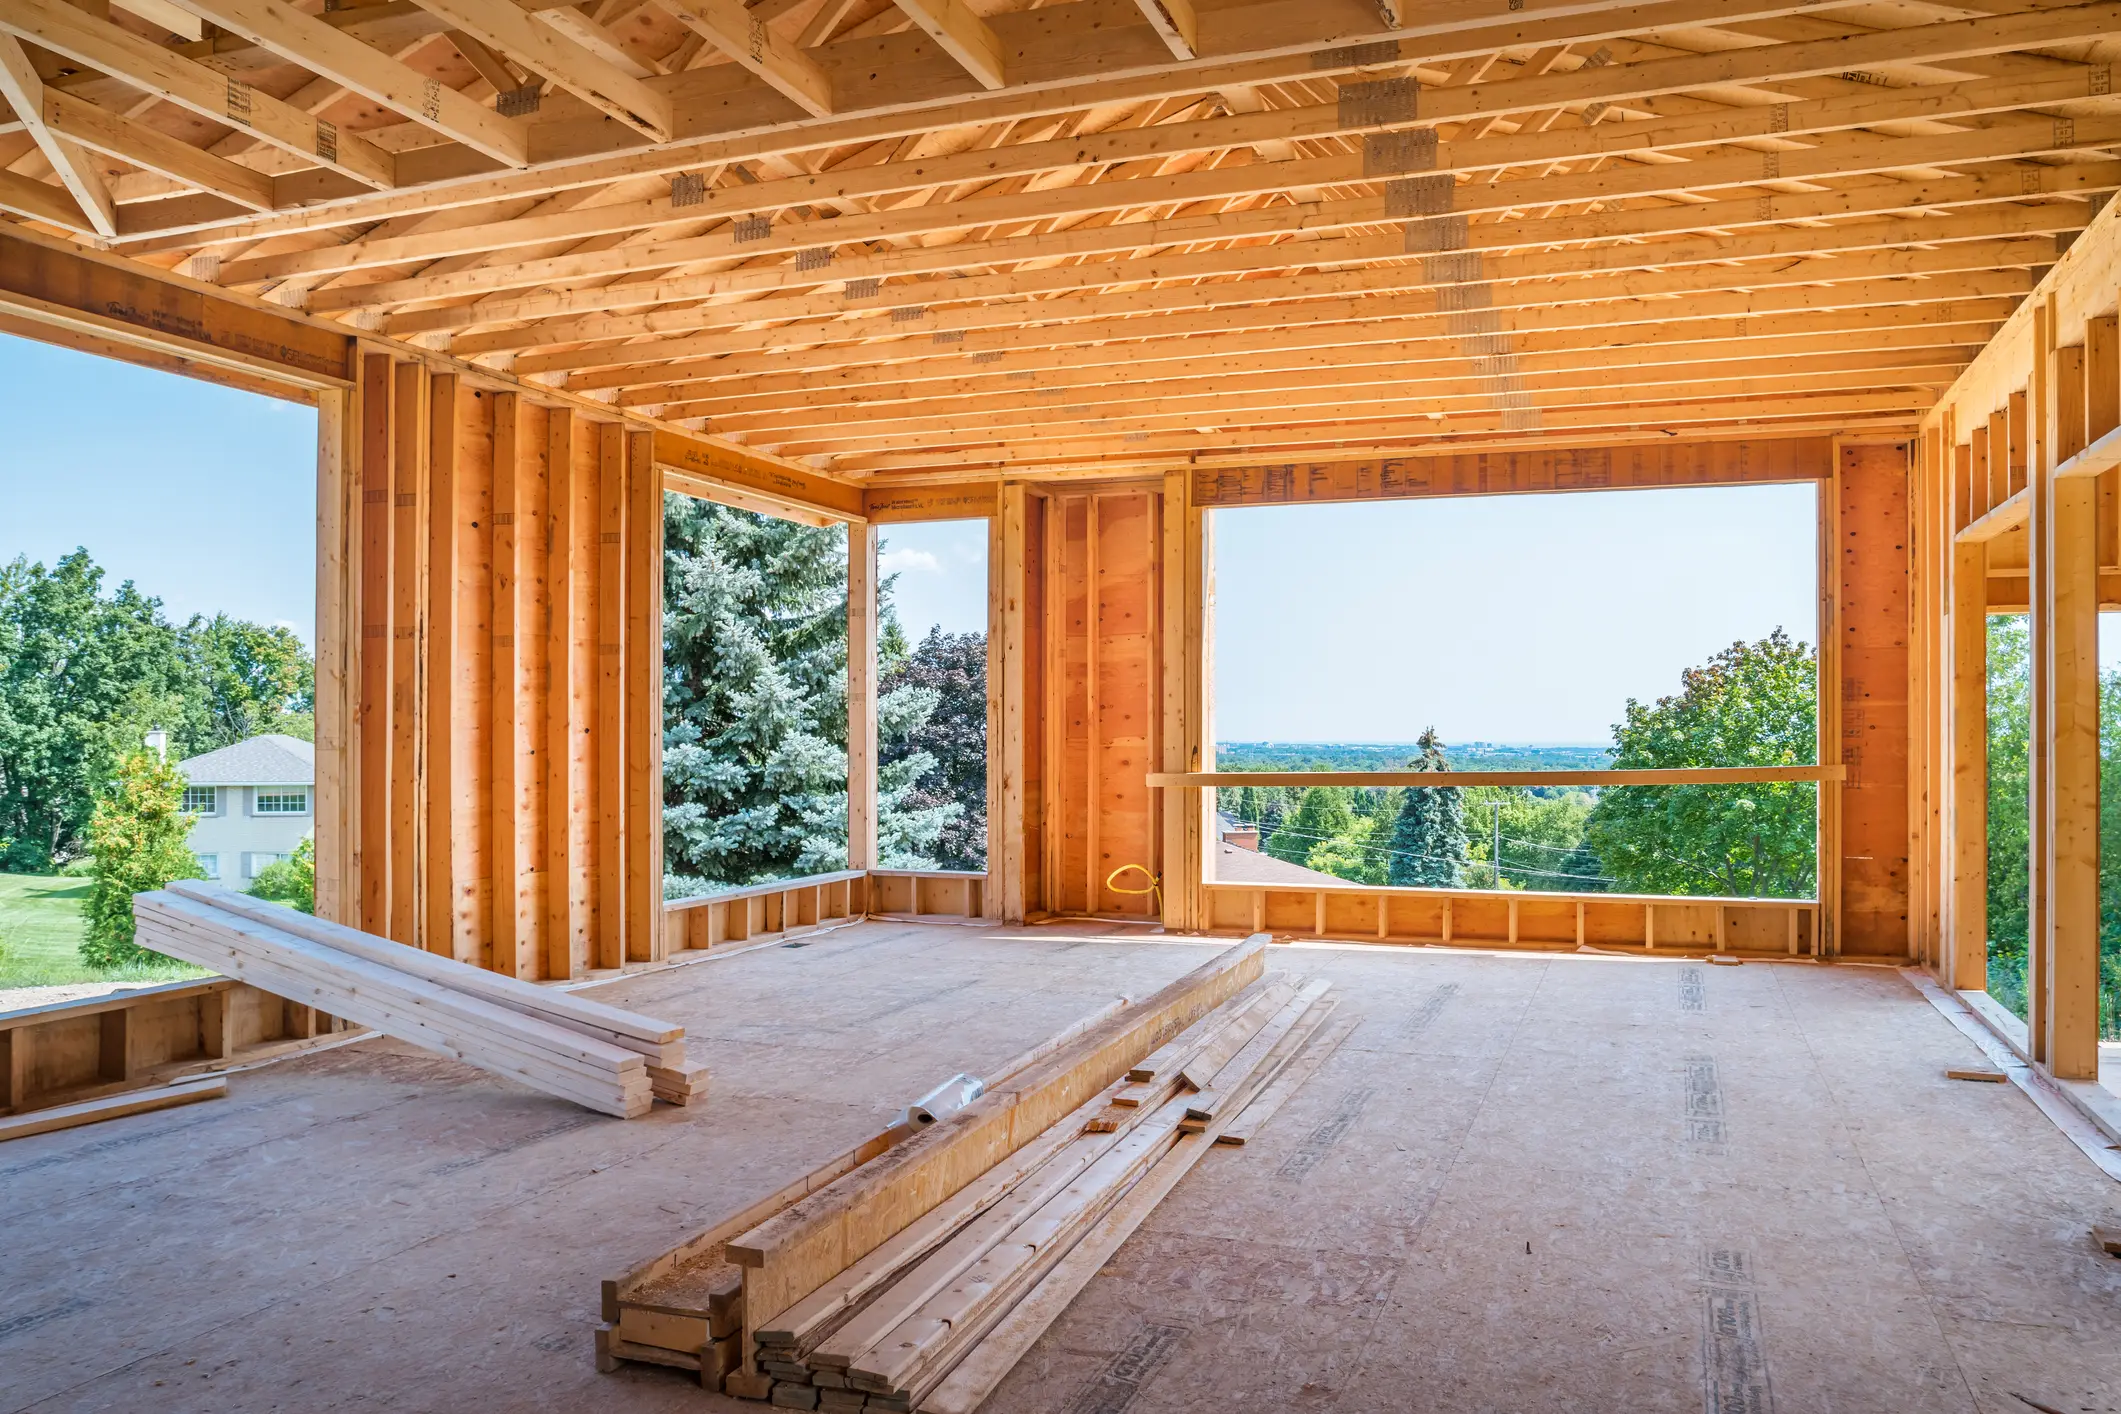 Extension de maison en bois : solution rapide et économique pour agrandir sa maison